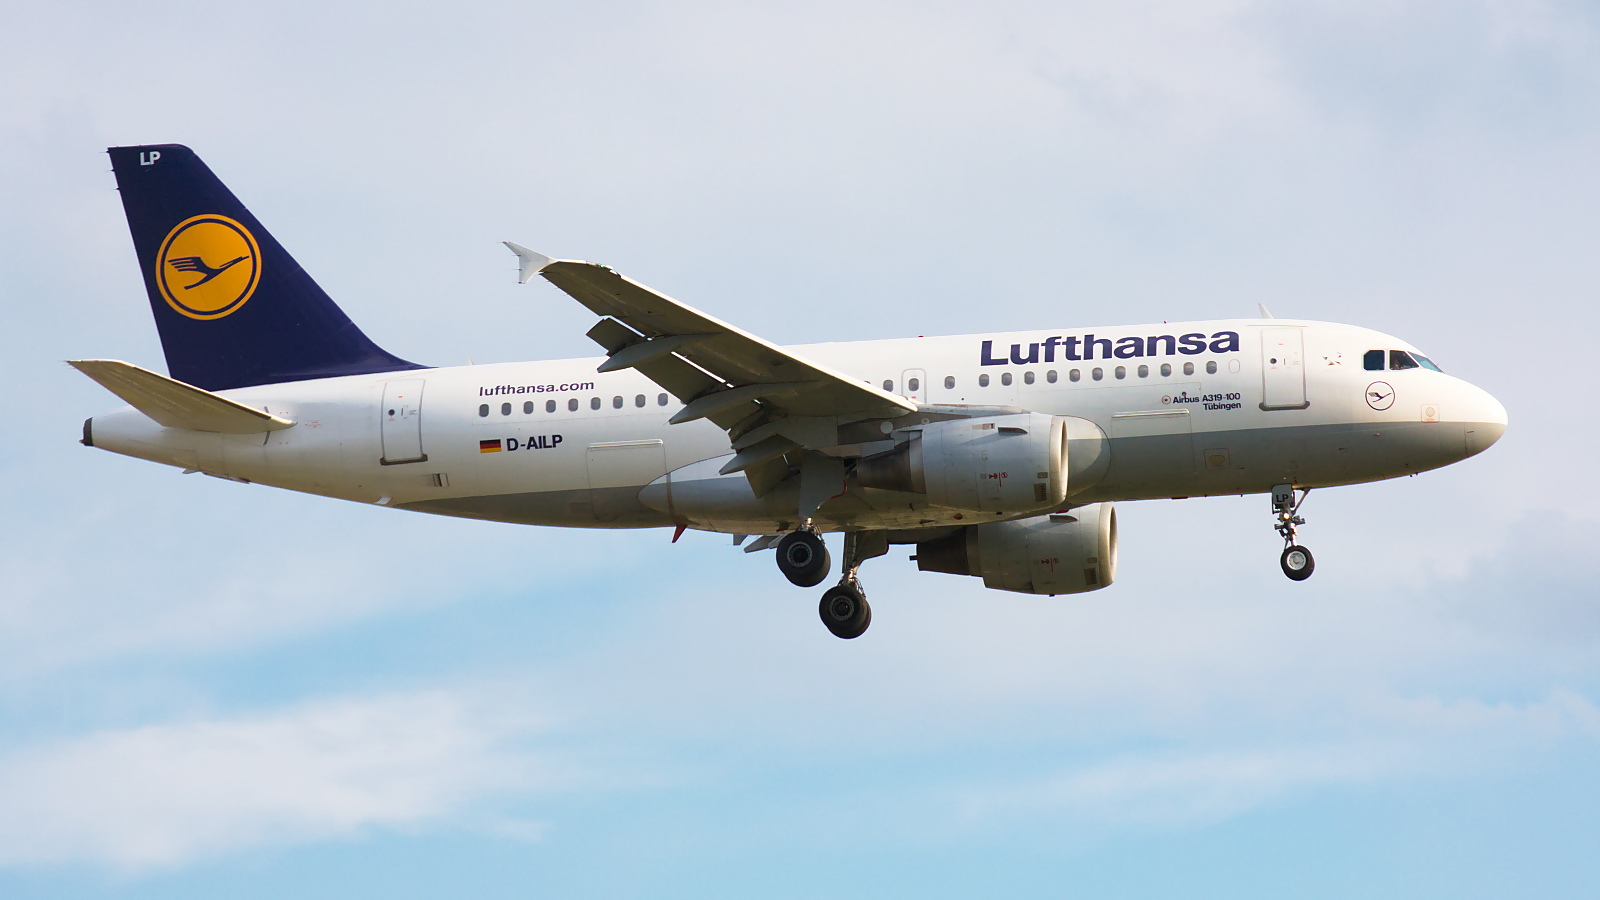 D-AILP ✈ Lufthansa Airbus A319-114 @ London-Heathrow